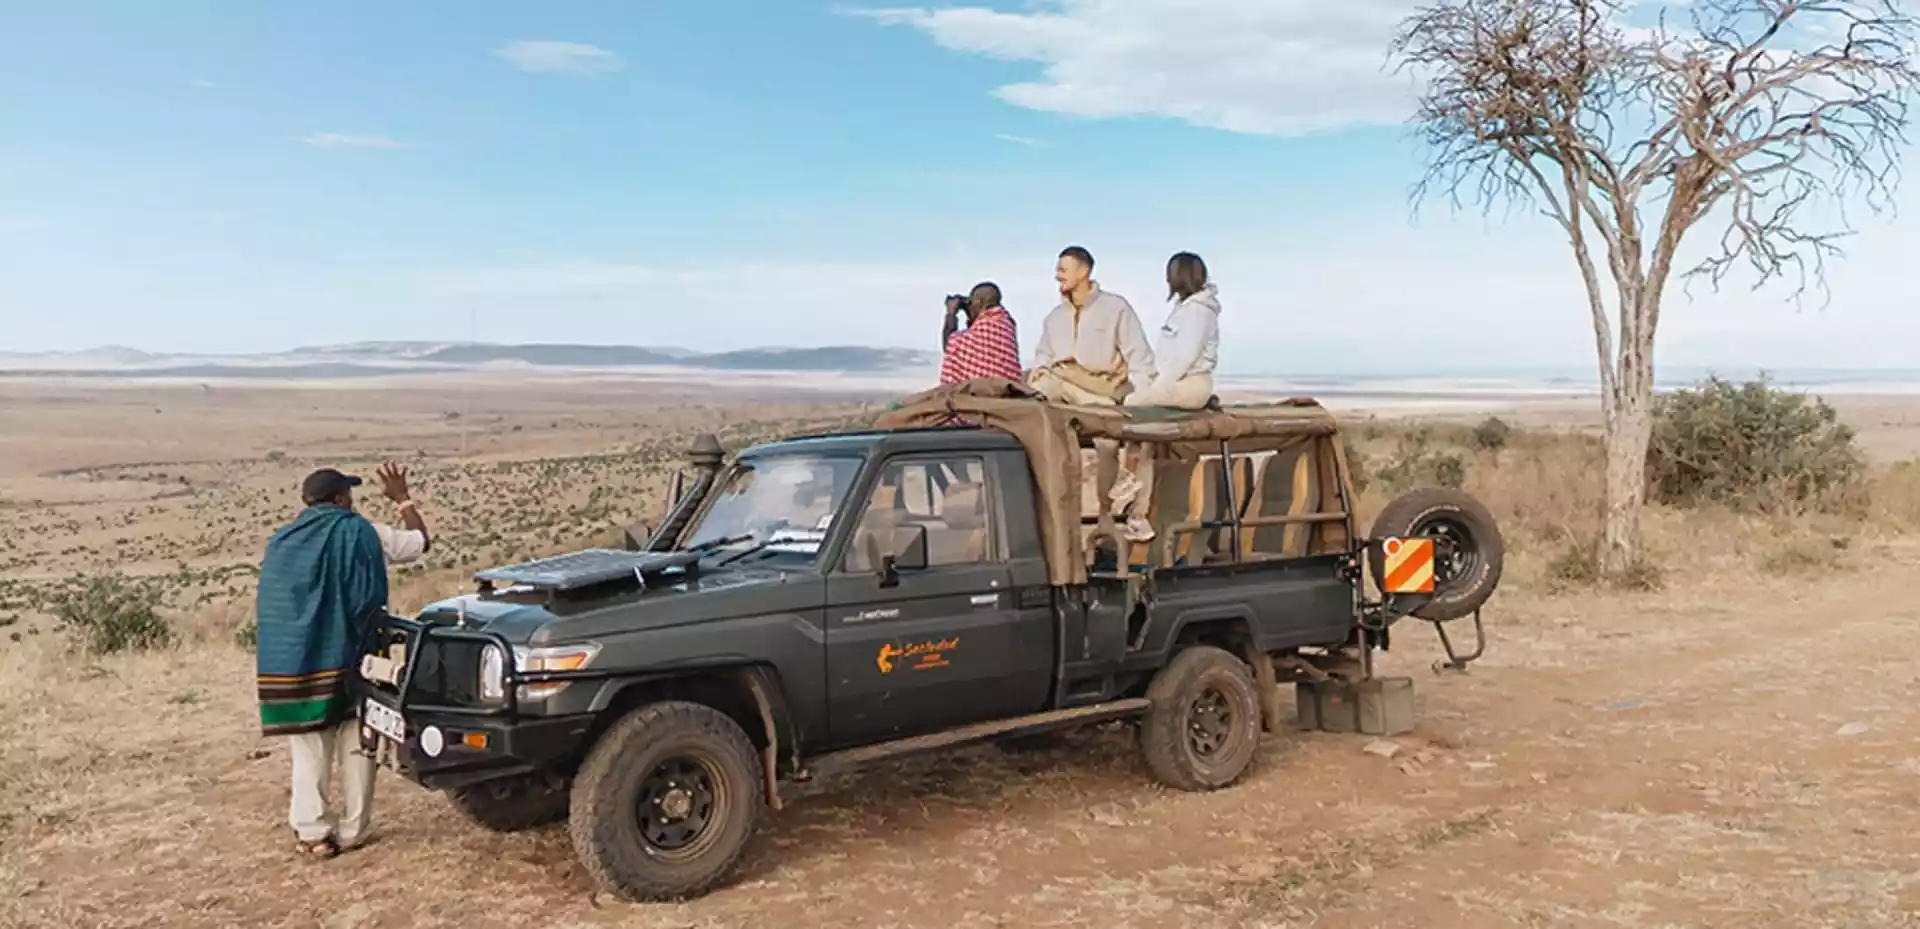 Reisende som speider utover savannen på baksiden av en safari jeep, med guide som speider foran bilen.